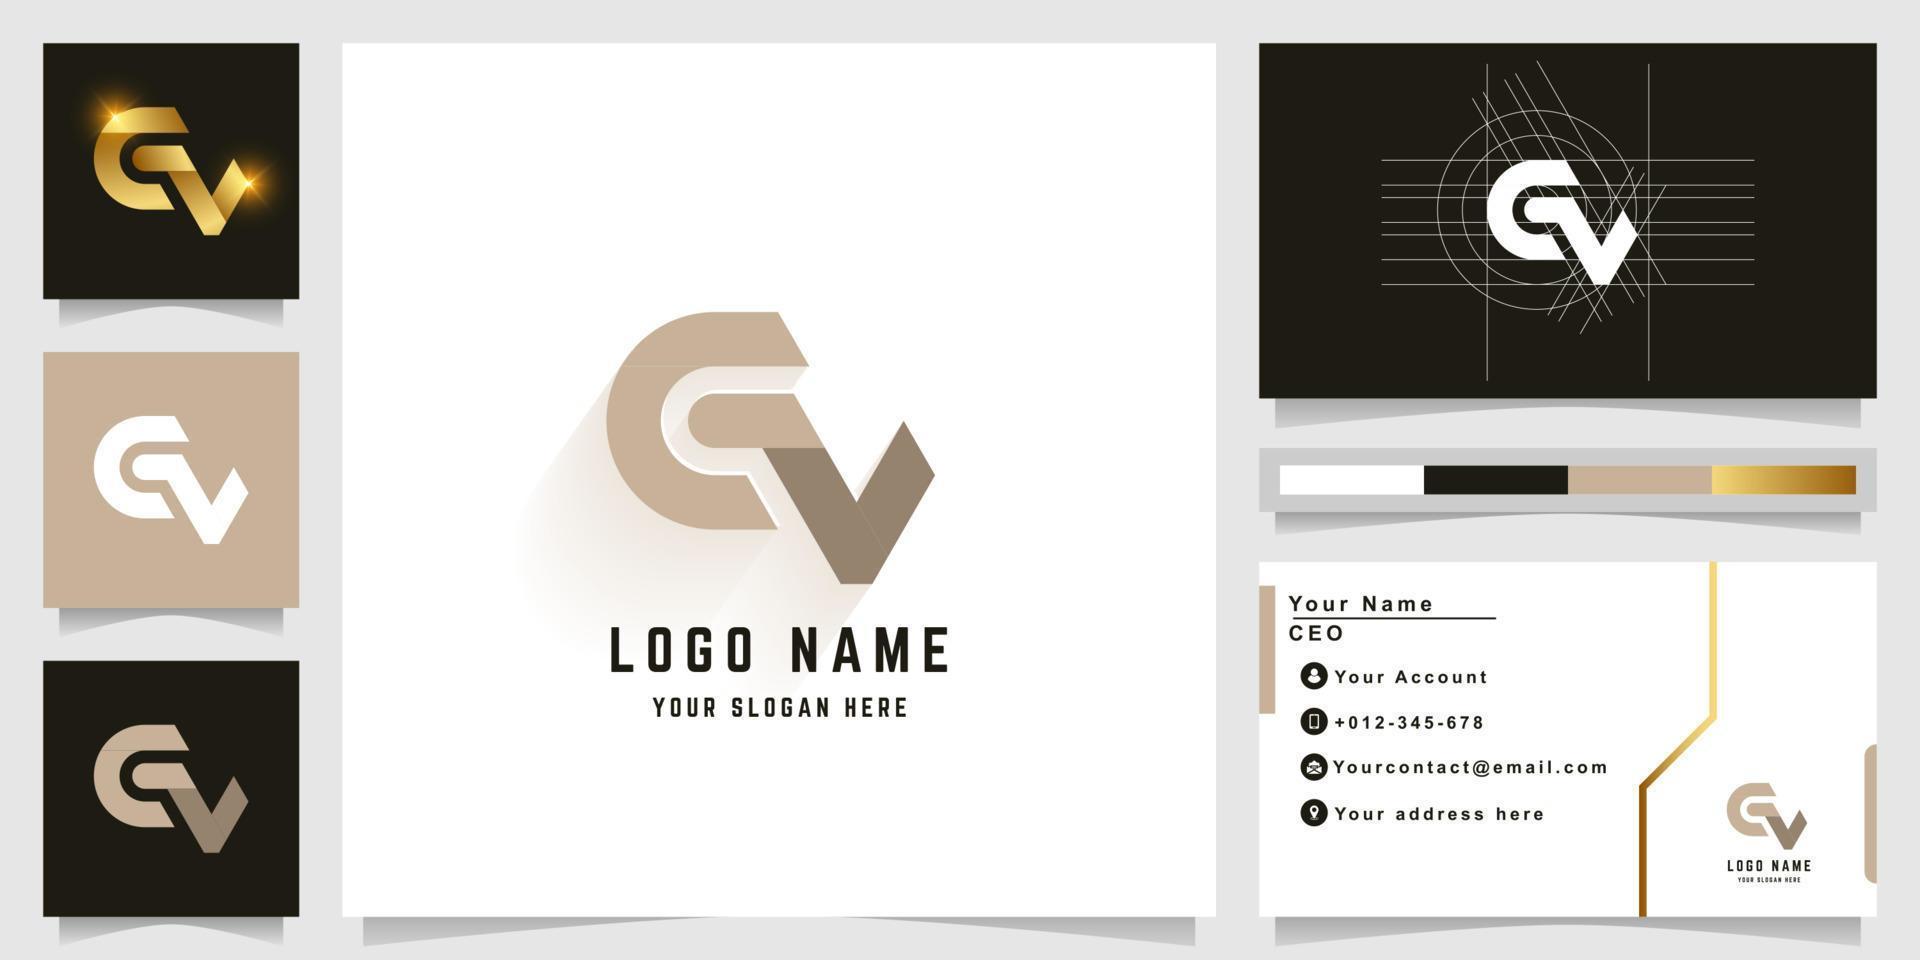 brev CV eller gv monogram logotyp med företag kort design vektor